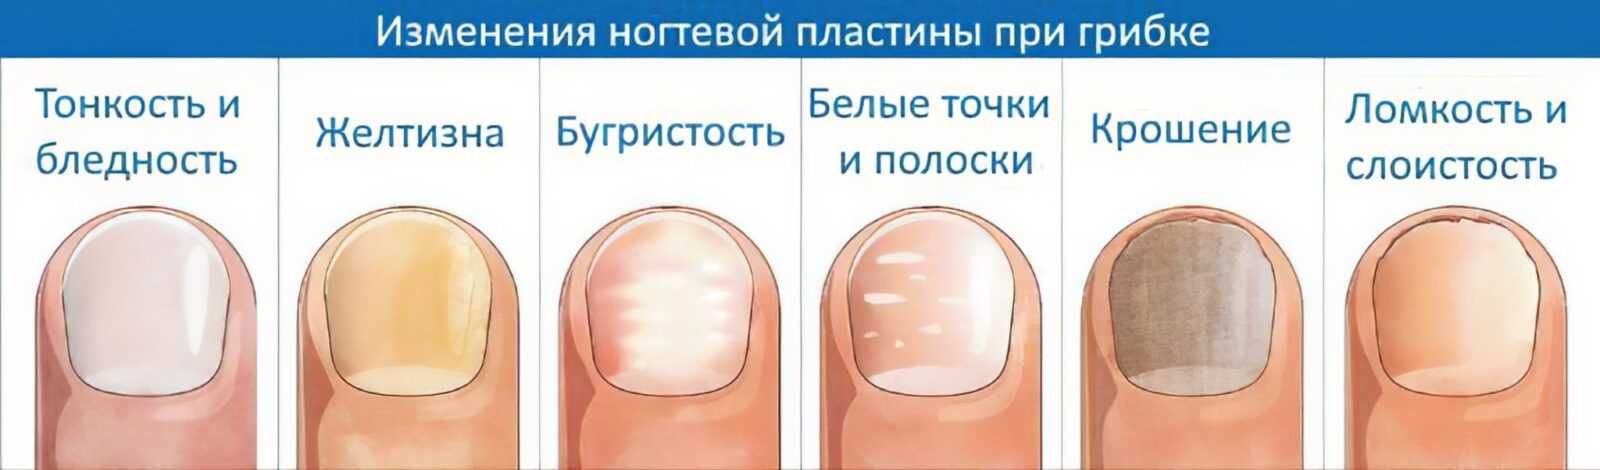 Как вылечить грибок на ногтях ног